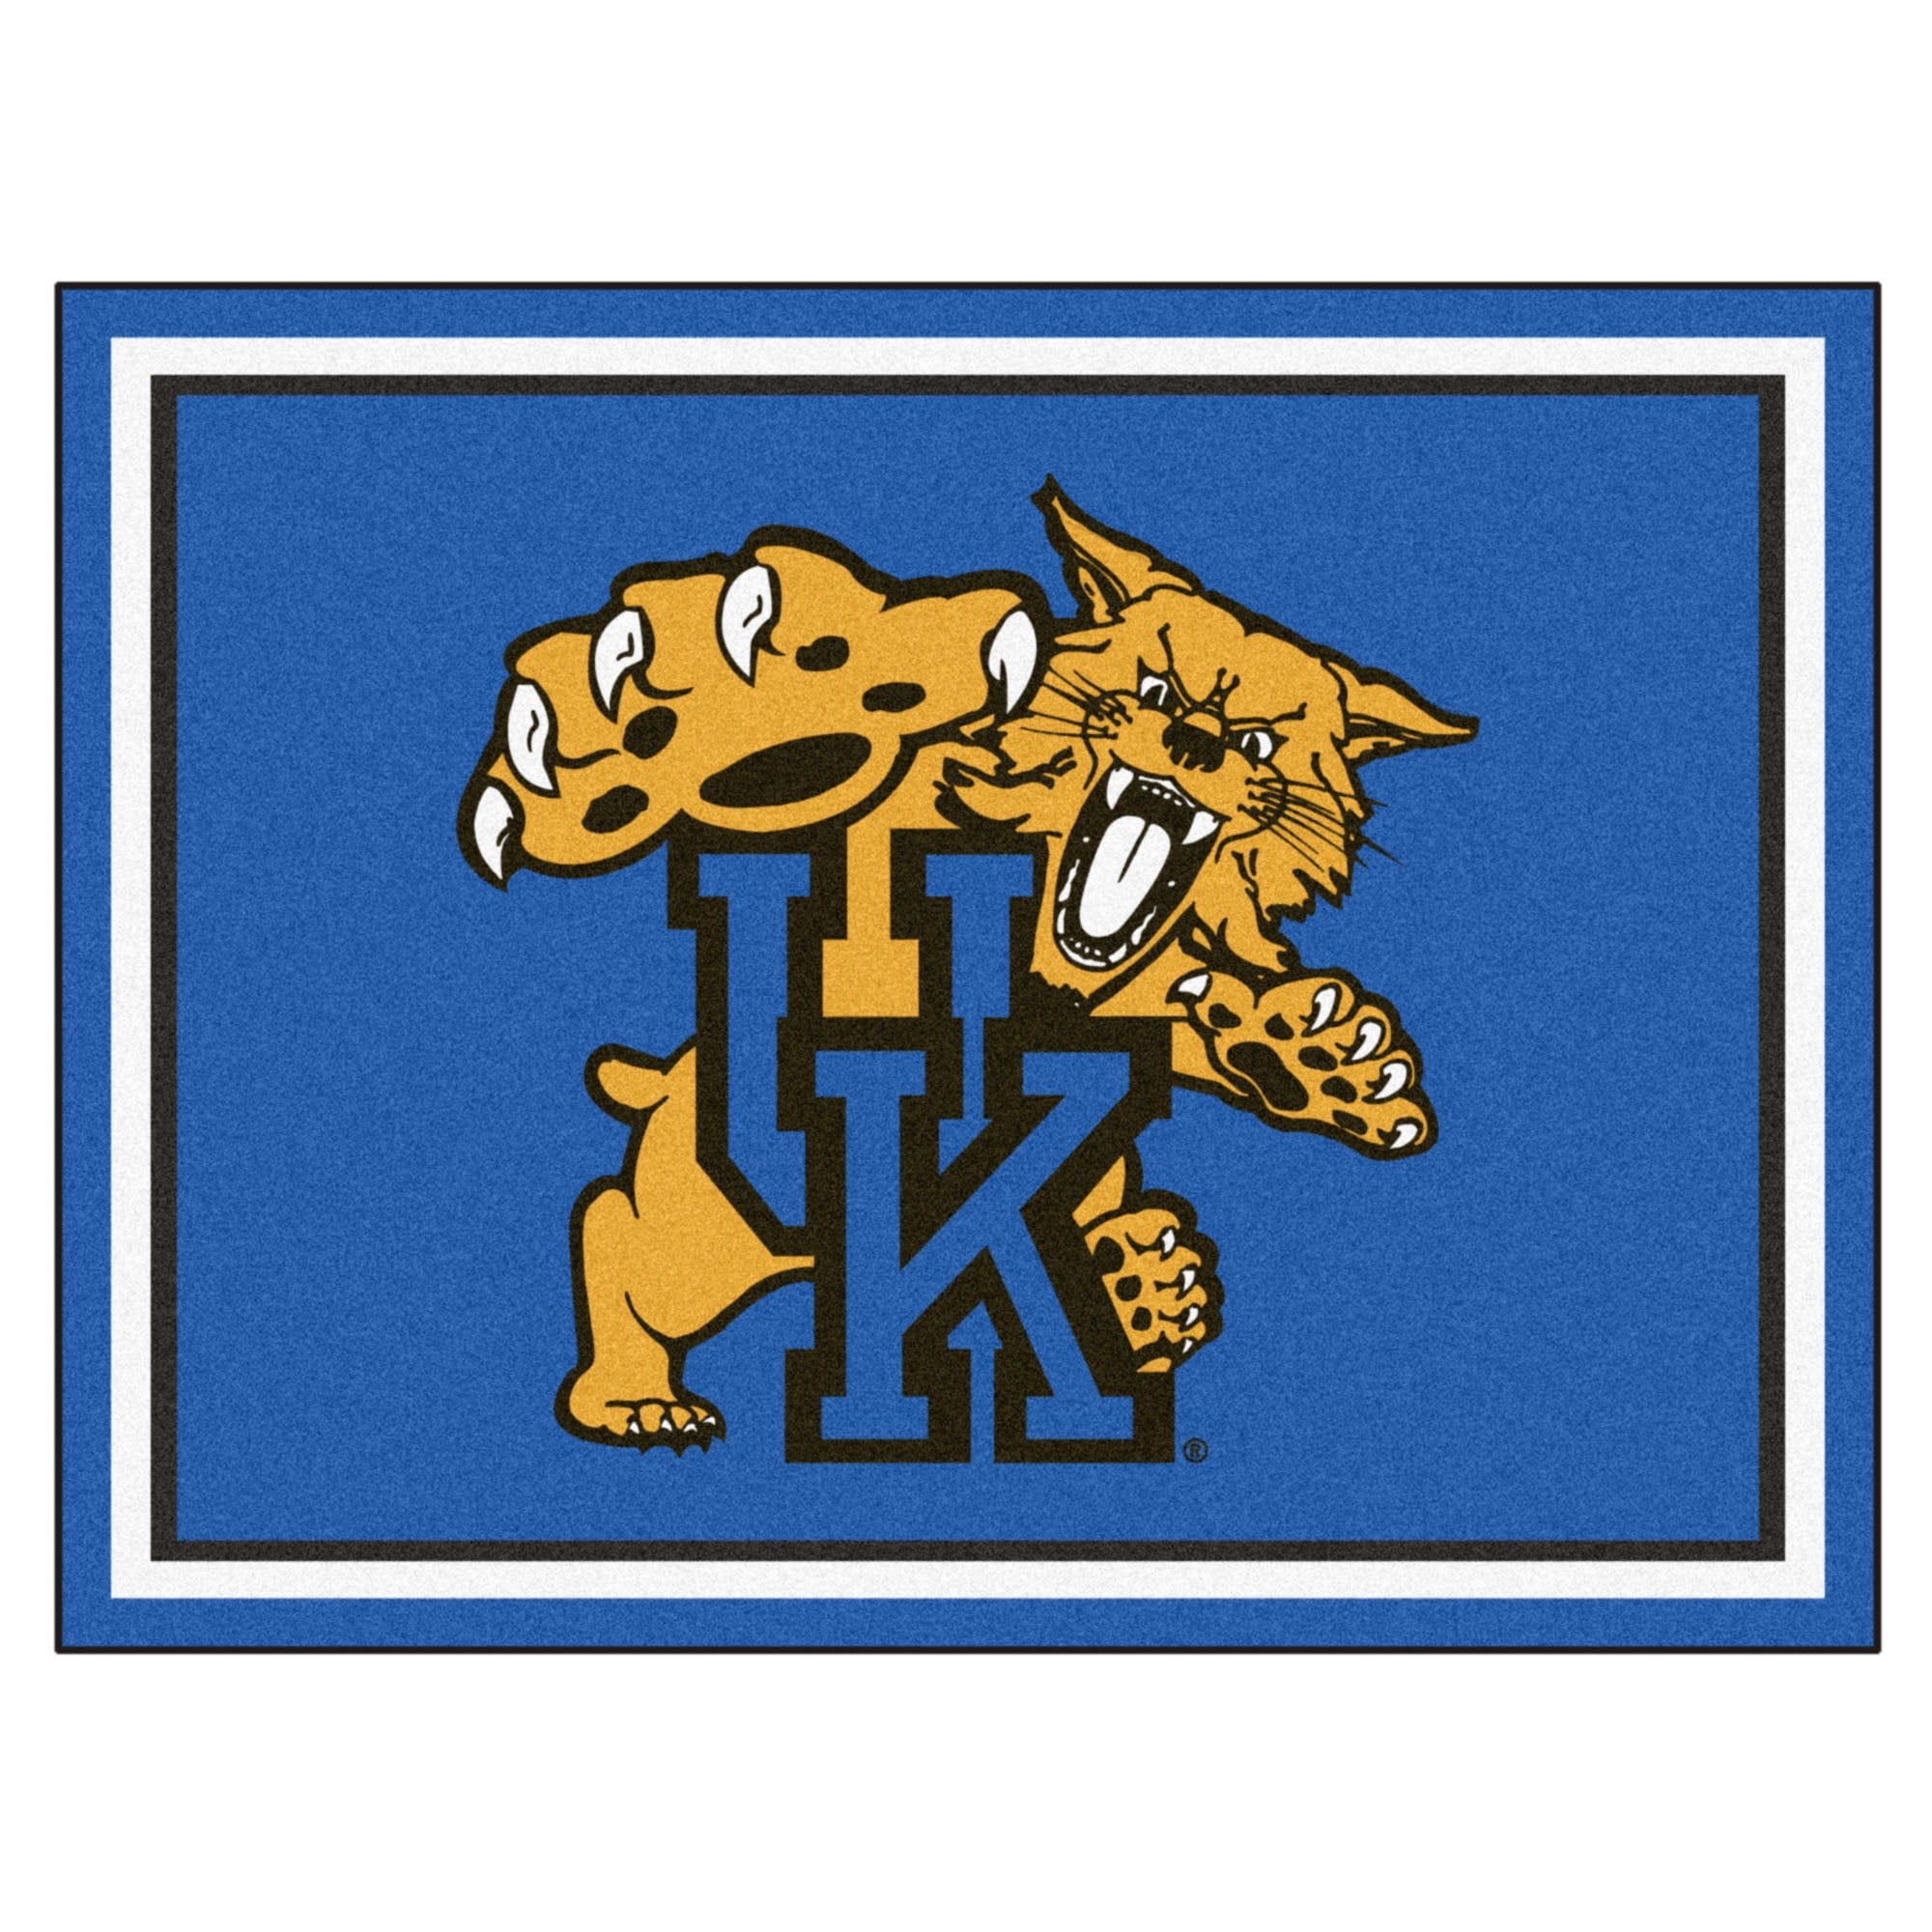 FANMATS NCAA University of Kentucky Wildcats Vinyl Door Mat